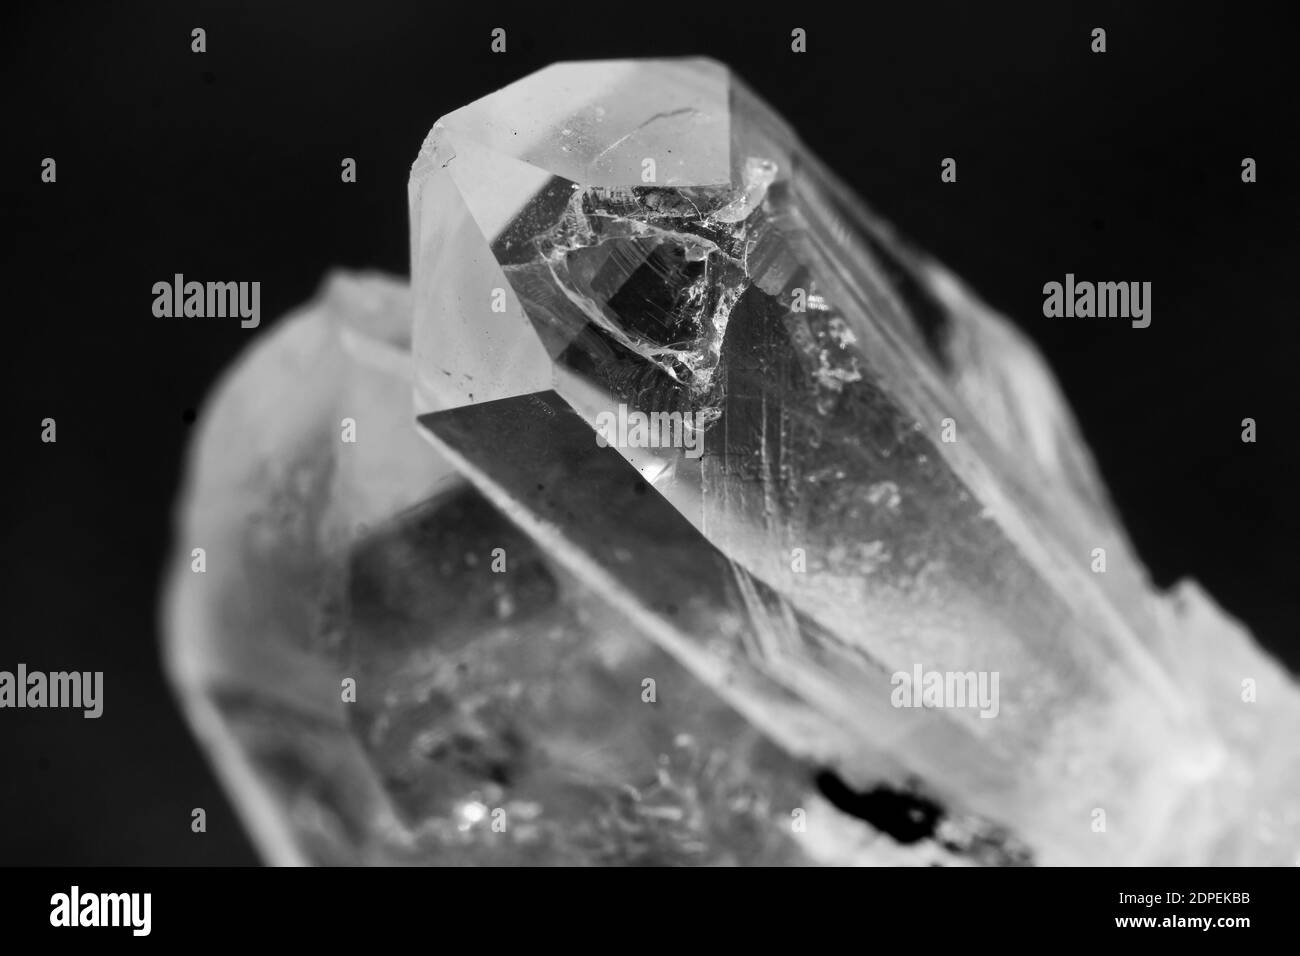 Detail eines 3x3 cm Hyalinquarzes. Hyalinquarz, auch Bergkristall genannt, ist eine völlig farblose Quarzsorte. Stockfoto